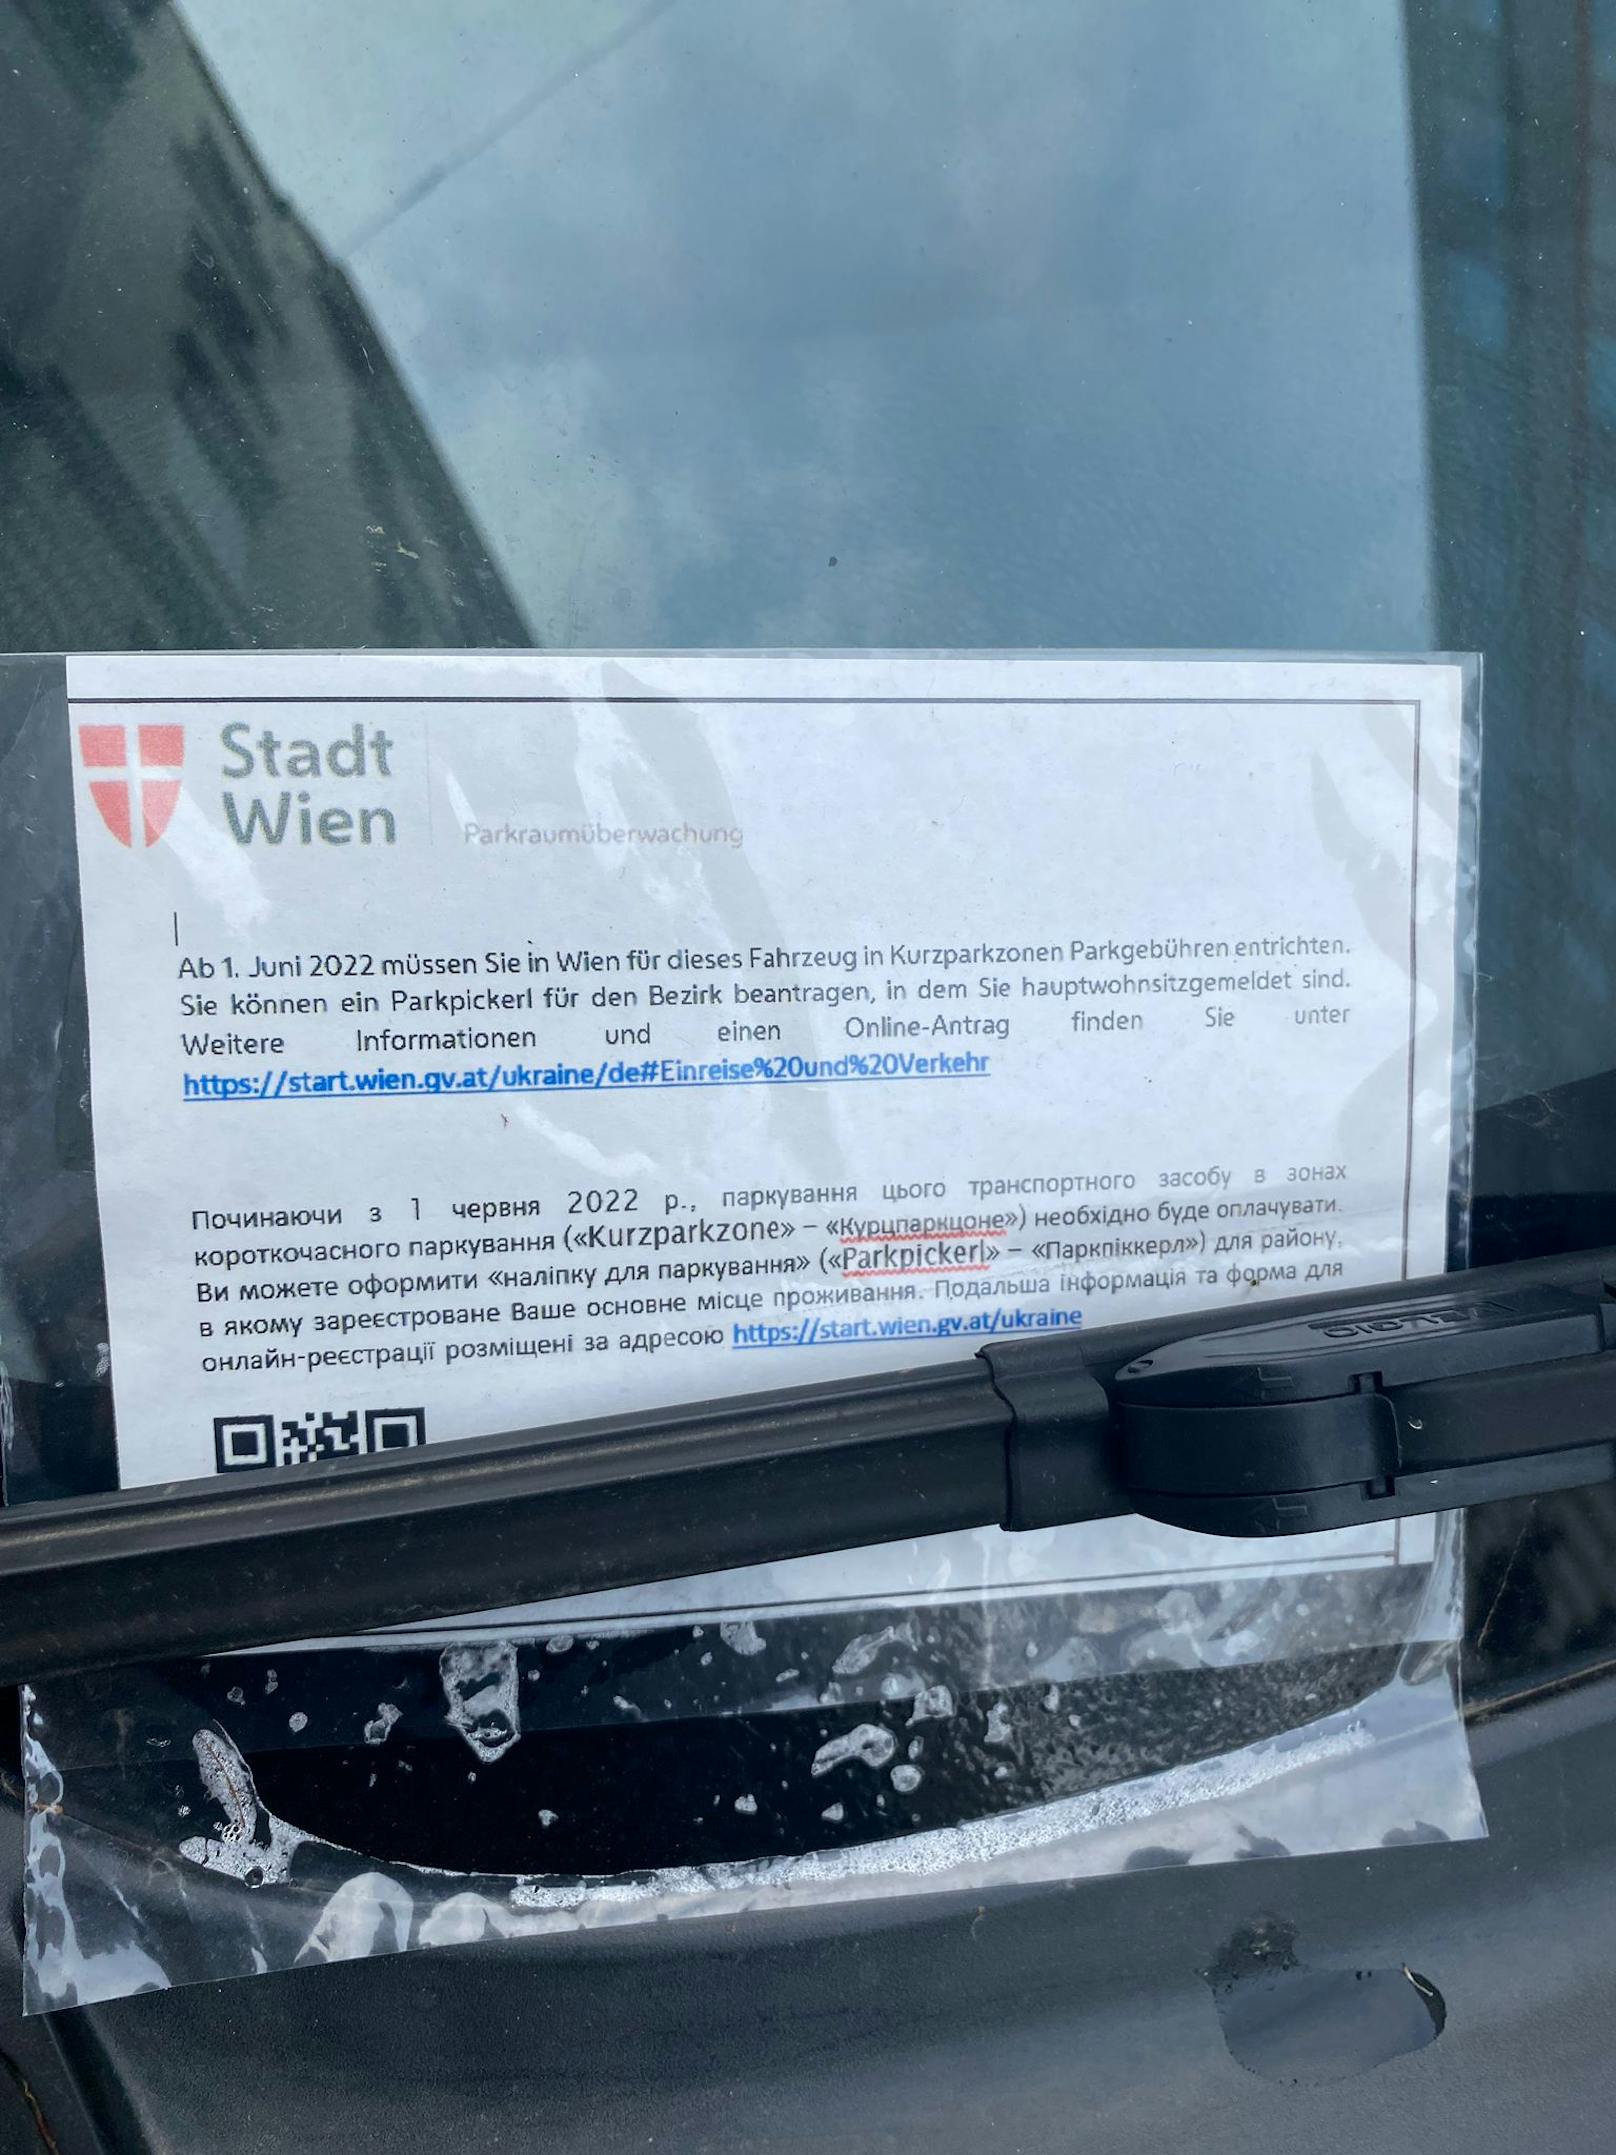 Wie ein <em>"Heute"</em>-Lokalaugenschein in der Wiener Innenstadt jetzt zeigt, werden Besitzer von Autos mit ukrainischem Kennzeichen bereits jetzt mittels "Merkzettel" auf der Windschutzscheibe über die neuen Regelungen informiert.